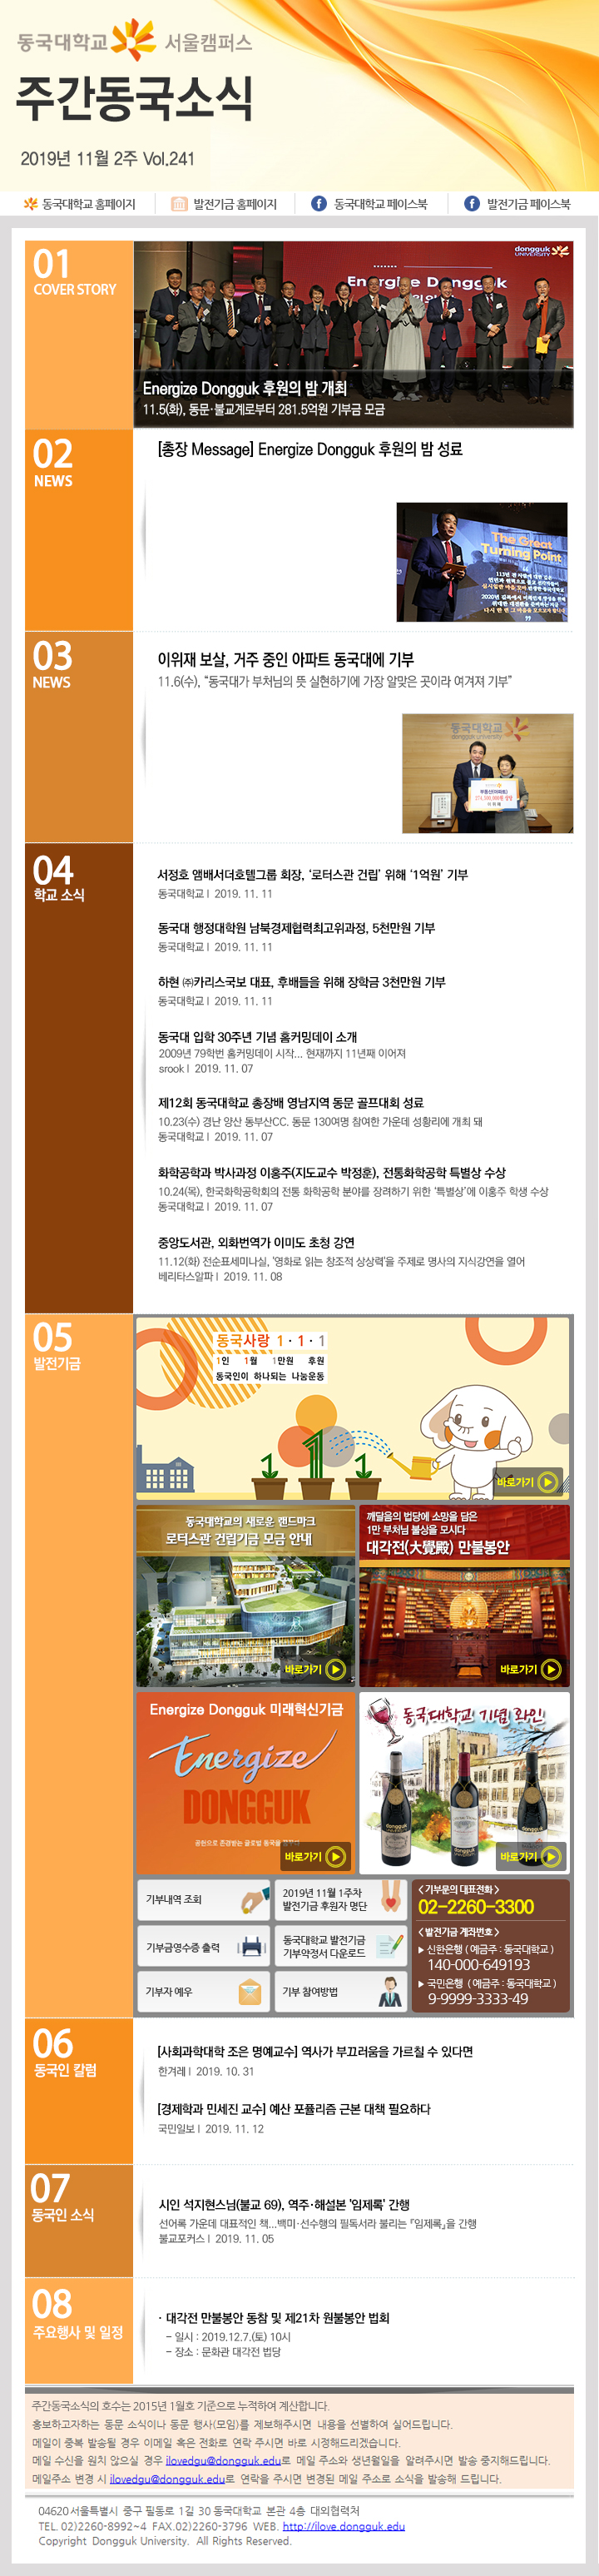 동국웹진 2019년 11월 2주 - 자세한 내용은 첨부파일로 확인하세요.